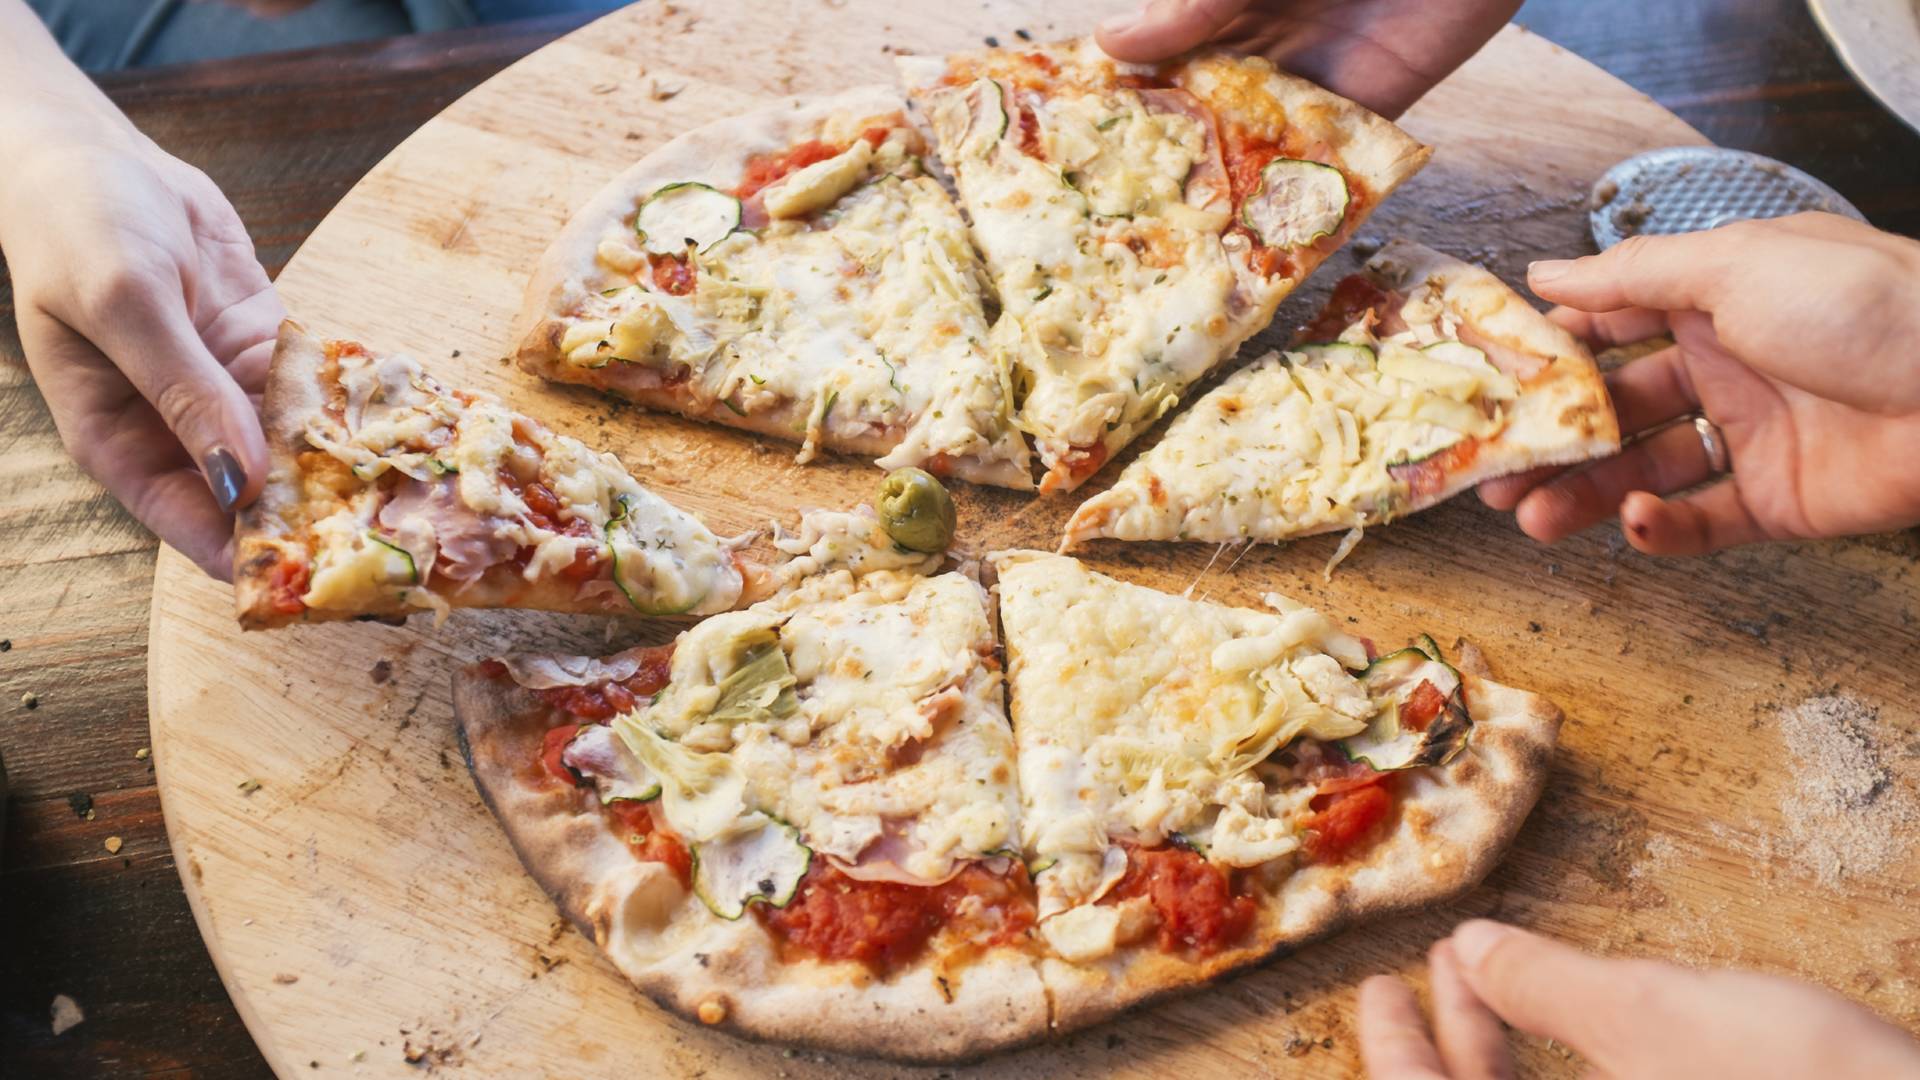 Matematycy wymyślili "perfekcyjny" sposób pokrojenia pizzy. Czy rzeczywiście jest idealny?